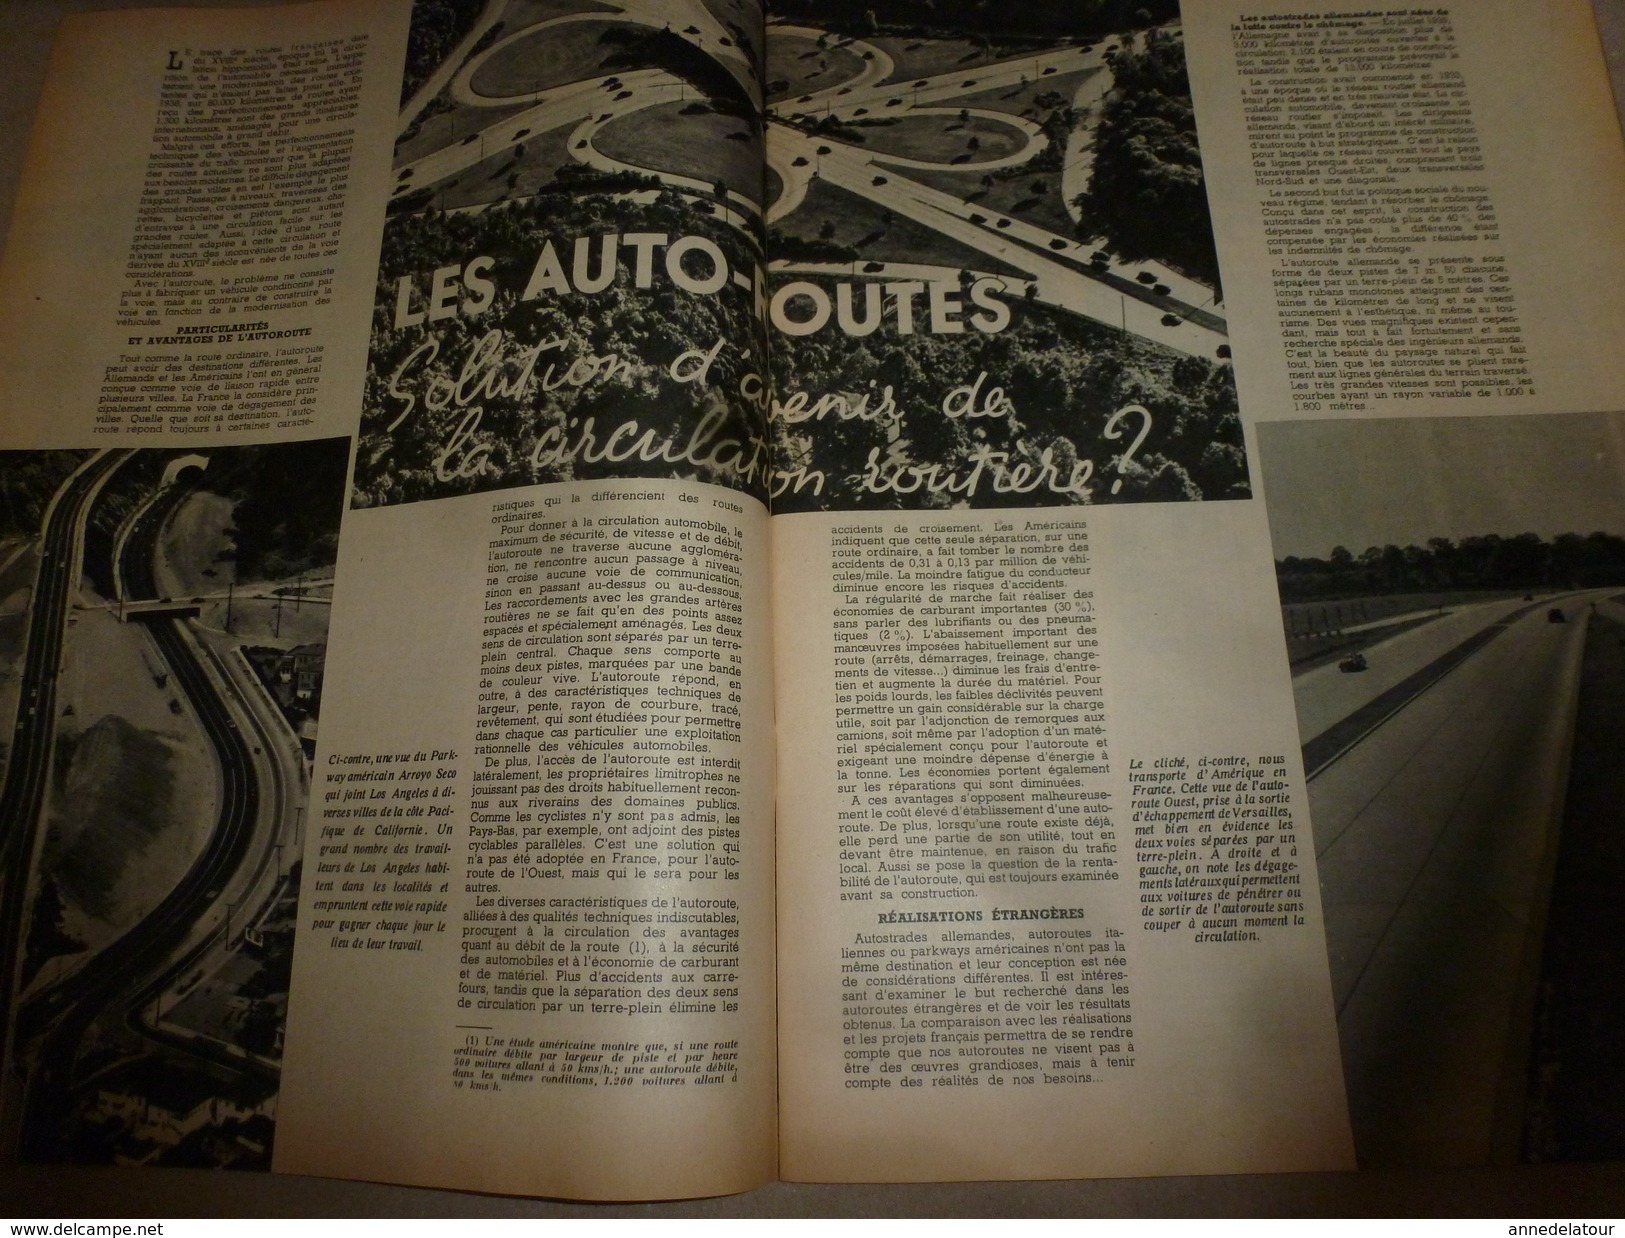 1952 SETA :Les REPTILES; Pétrole En France (Lacq, St-Marcet,,etc);AUTOROUTES (Marseilles, Rocquencourt,etc) - Ciencia